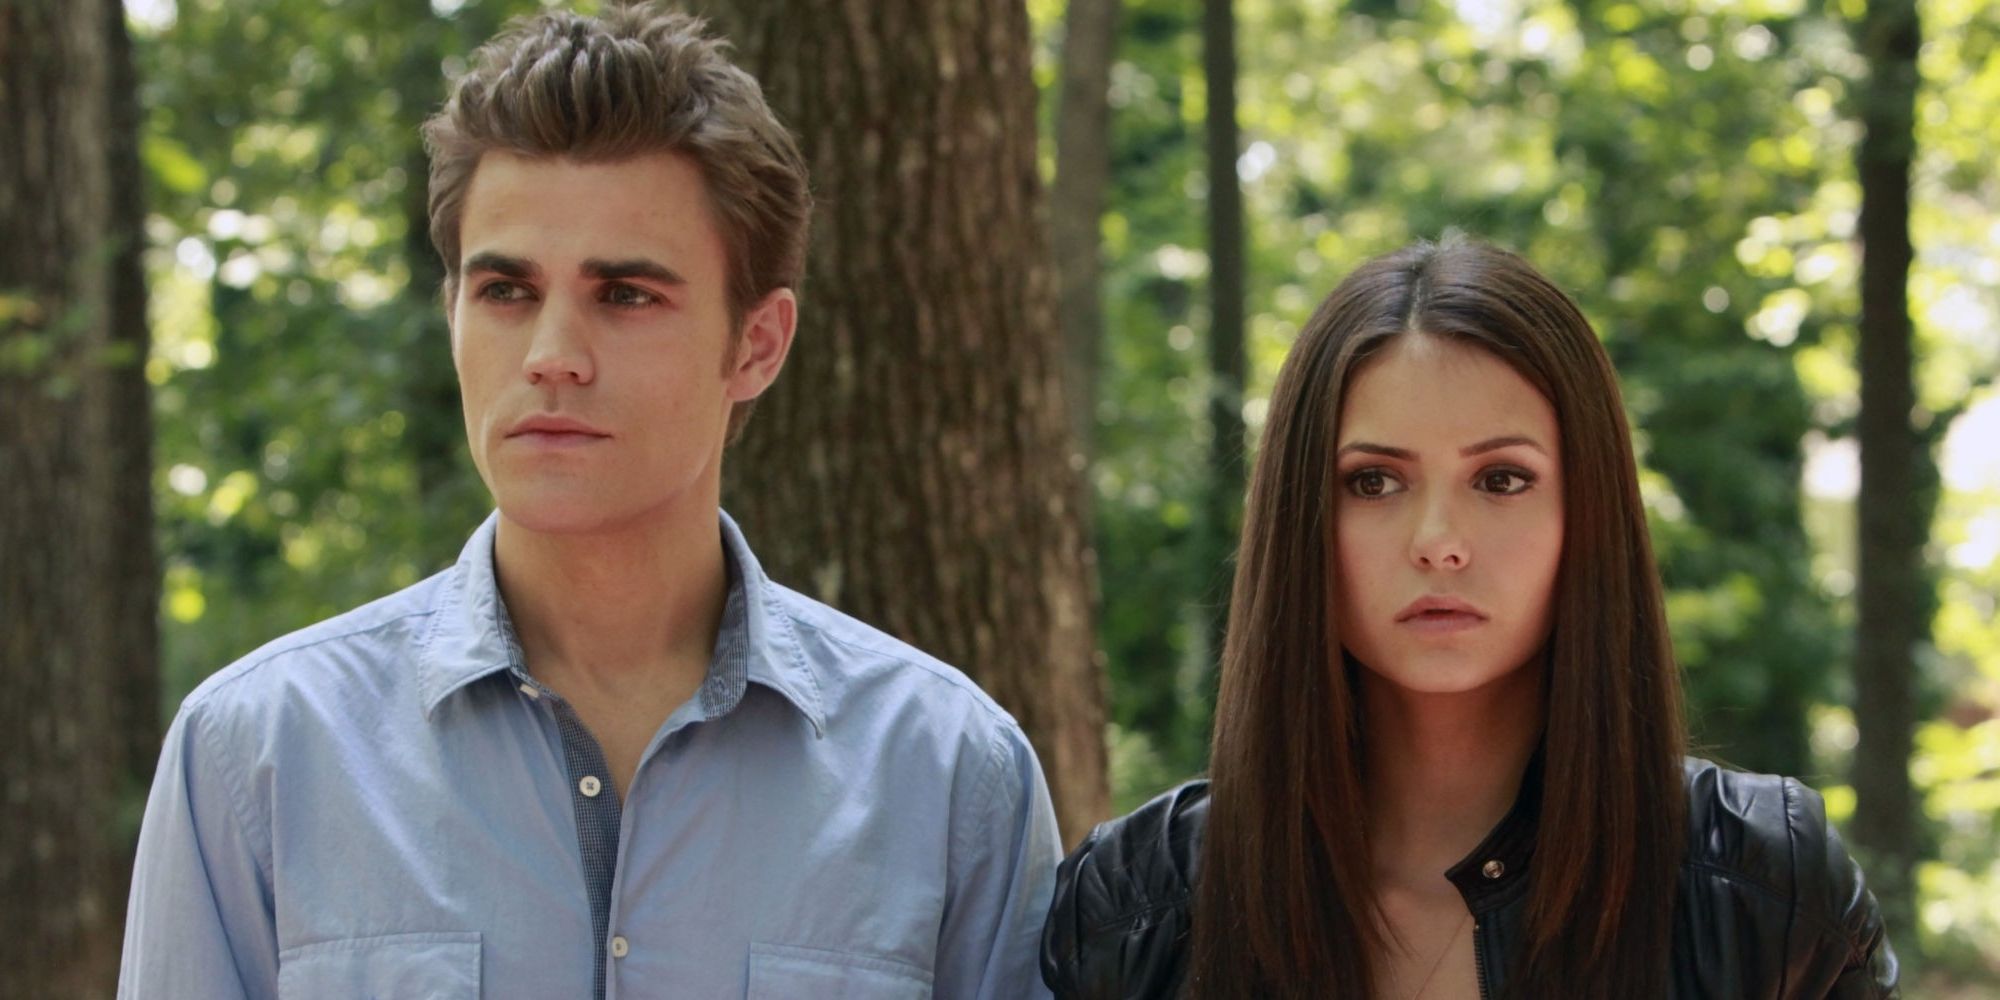 Stefan and elena dating timeline